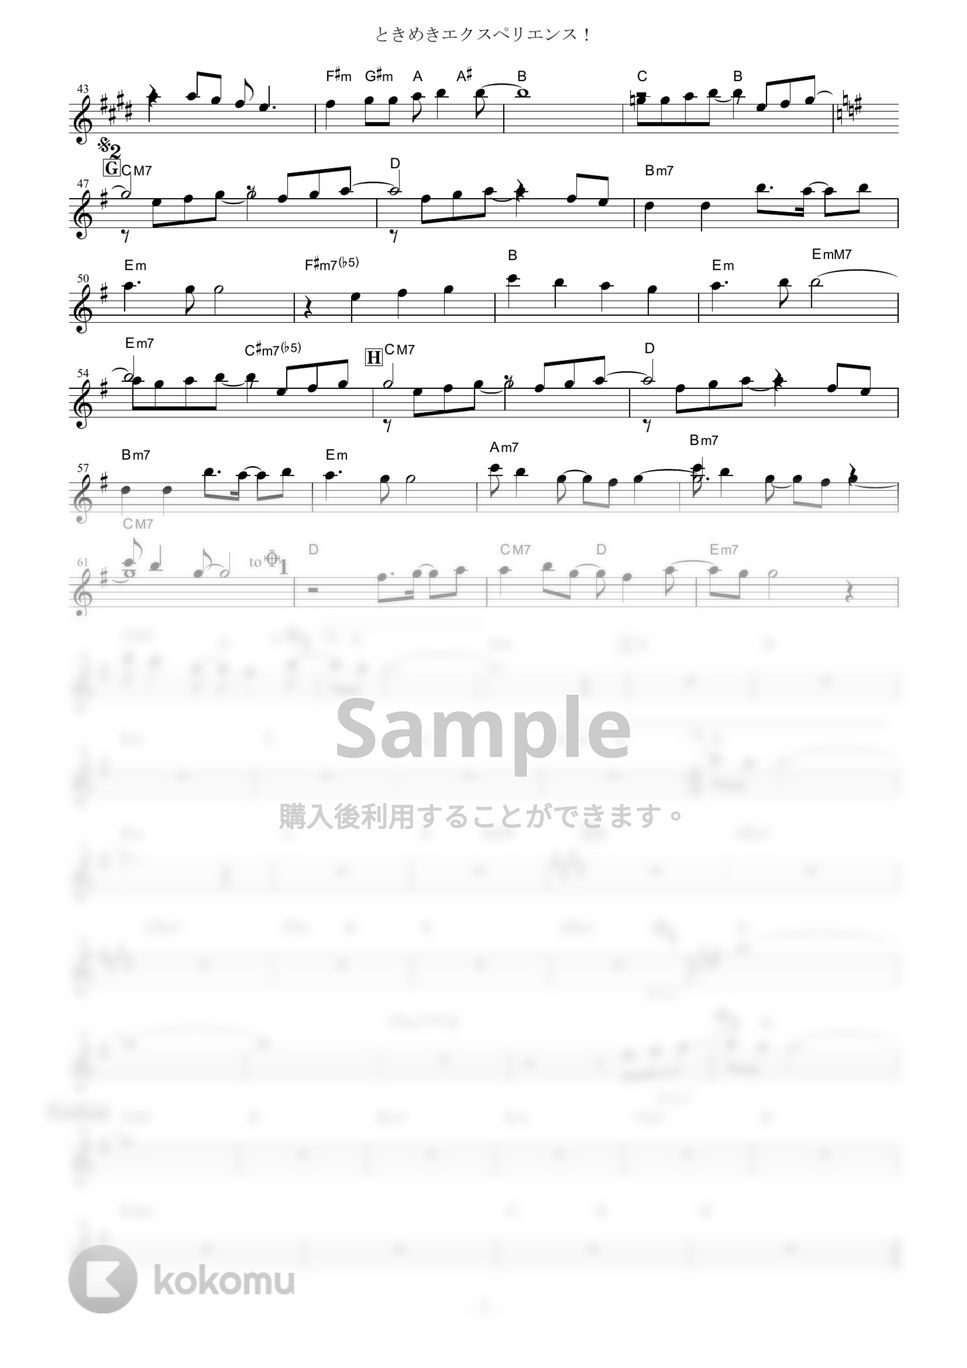 BanG Dream! - ときめきエクスペリエンス!【in C】 by muta-sax